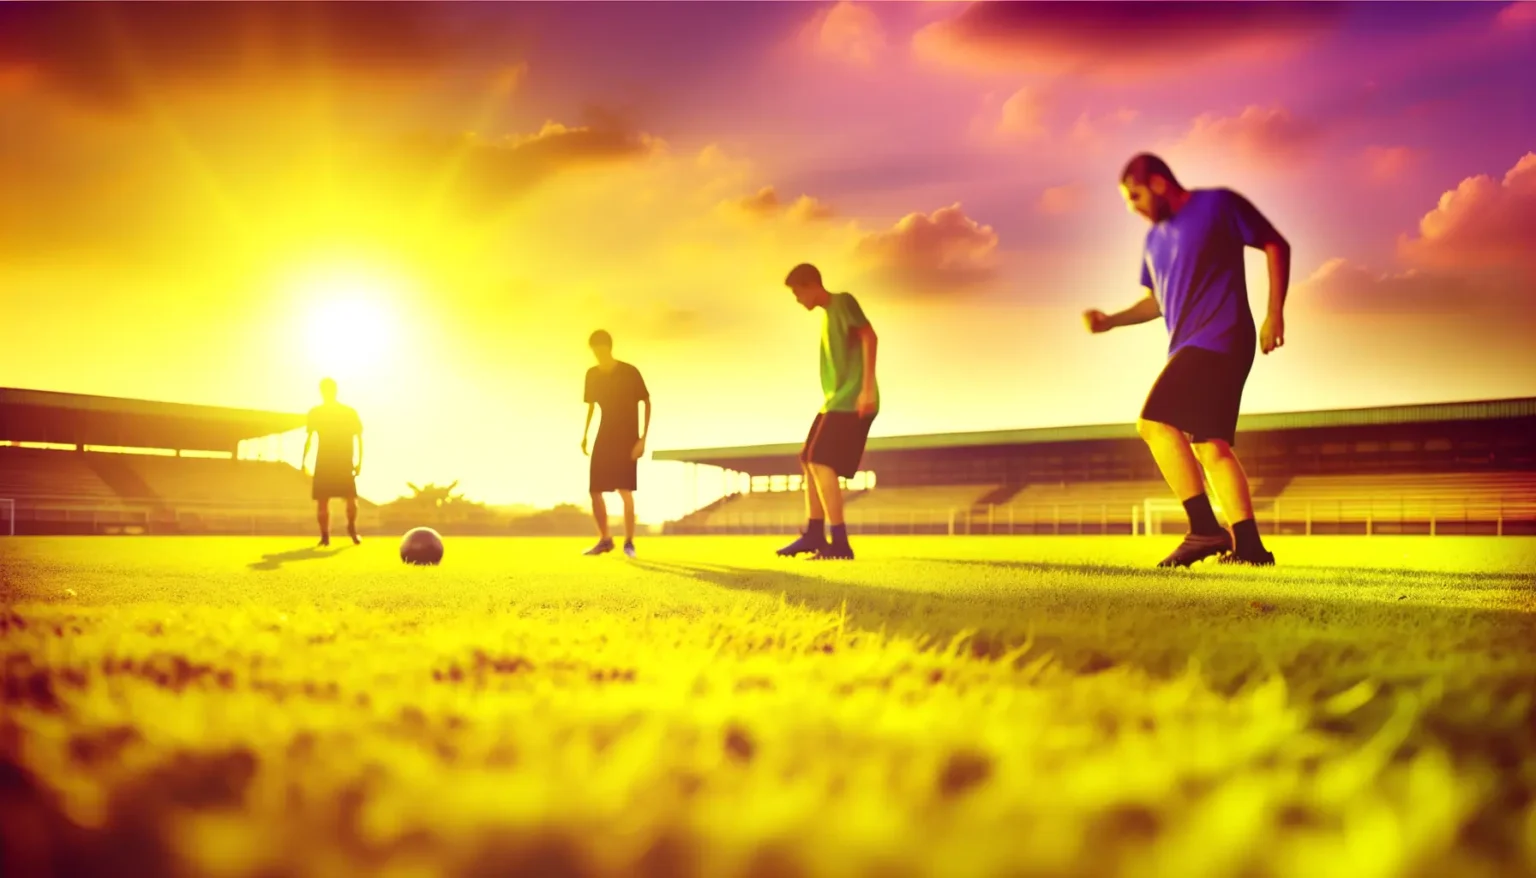 Vier Personen spielen bei Sonnenuntergang Fußball auf einem Rasenplatz. Die tiefstehende Sonne taucht die Szene in ein warmes, goldenes Licht, während im Hintergrund Teile einer Tribüne zu erkennen sind. Die Silhouetten der Spieler heben sich deutlich gegen den hellen Himmel ab.